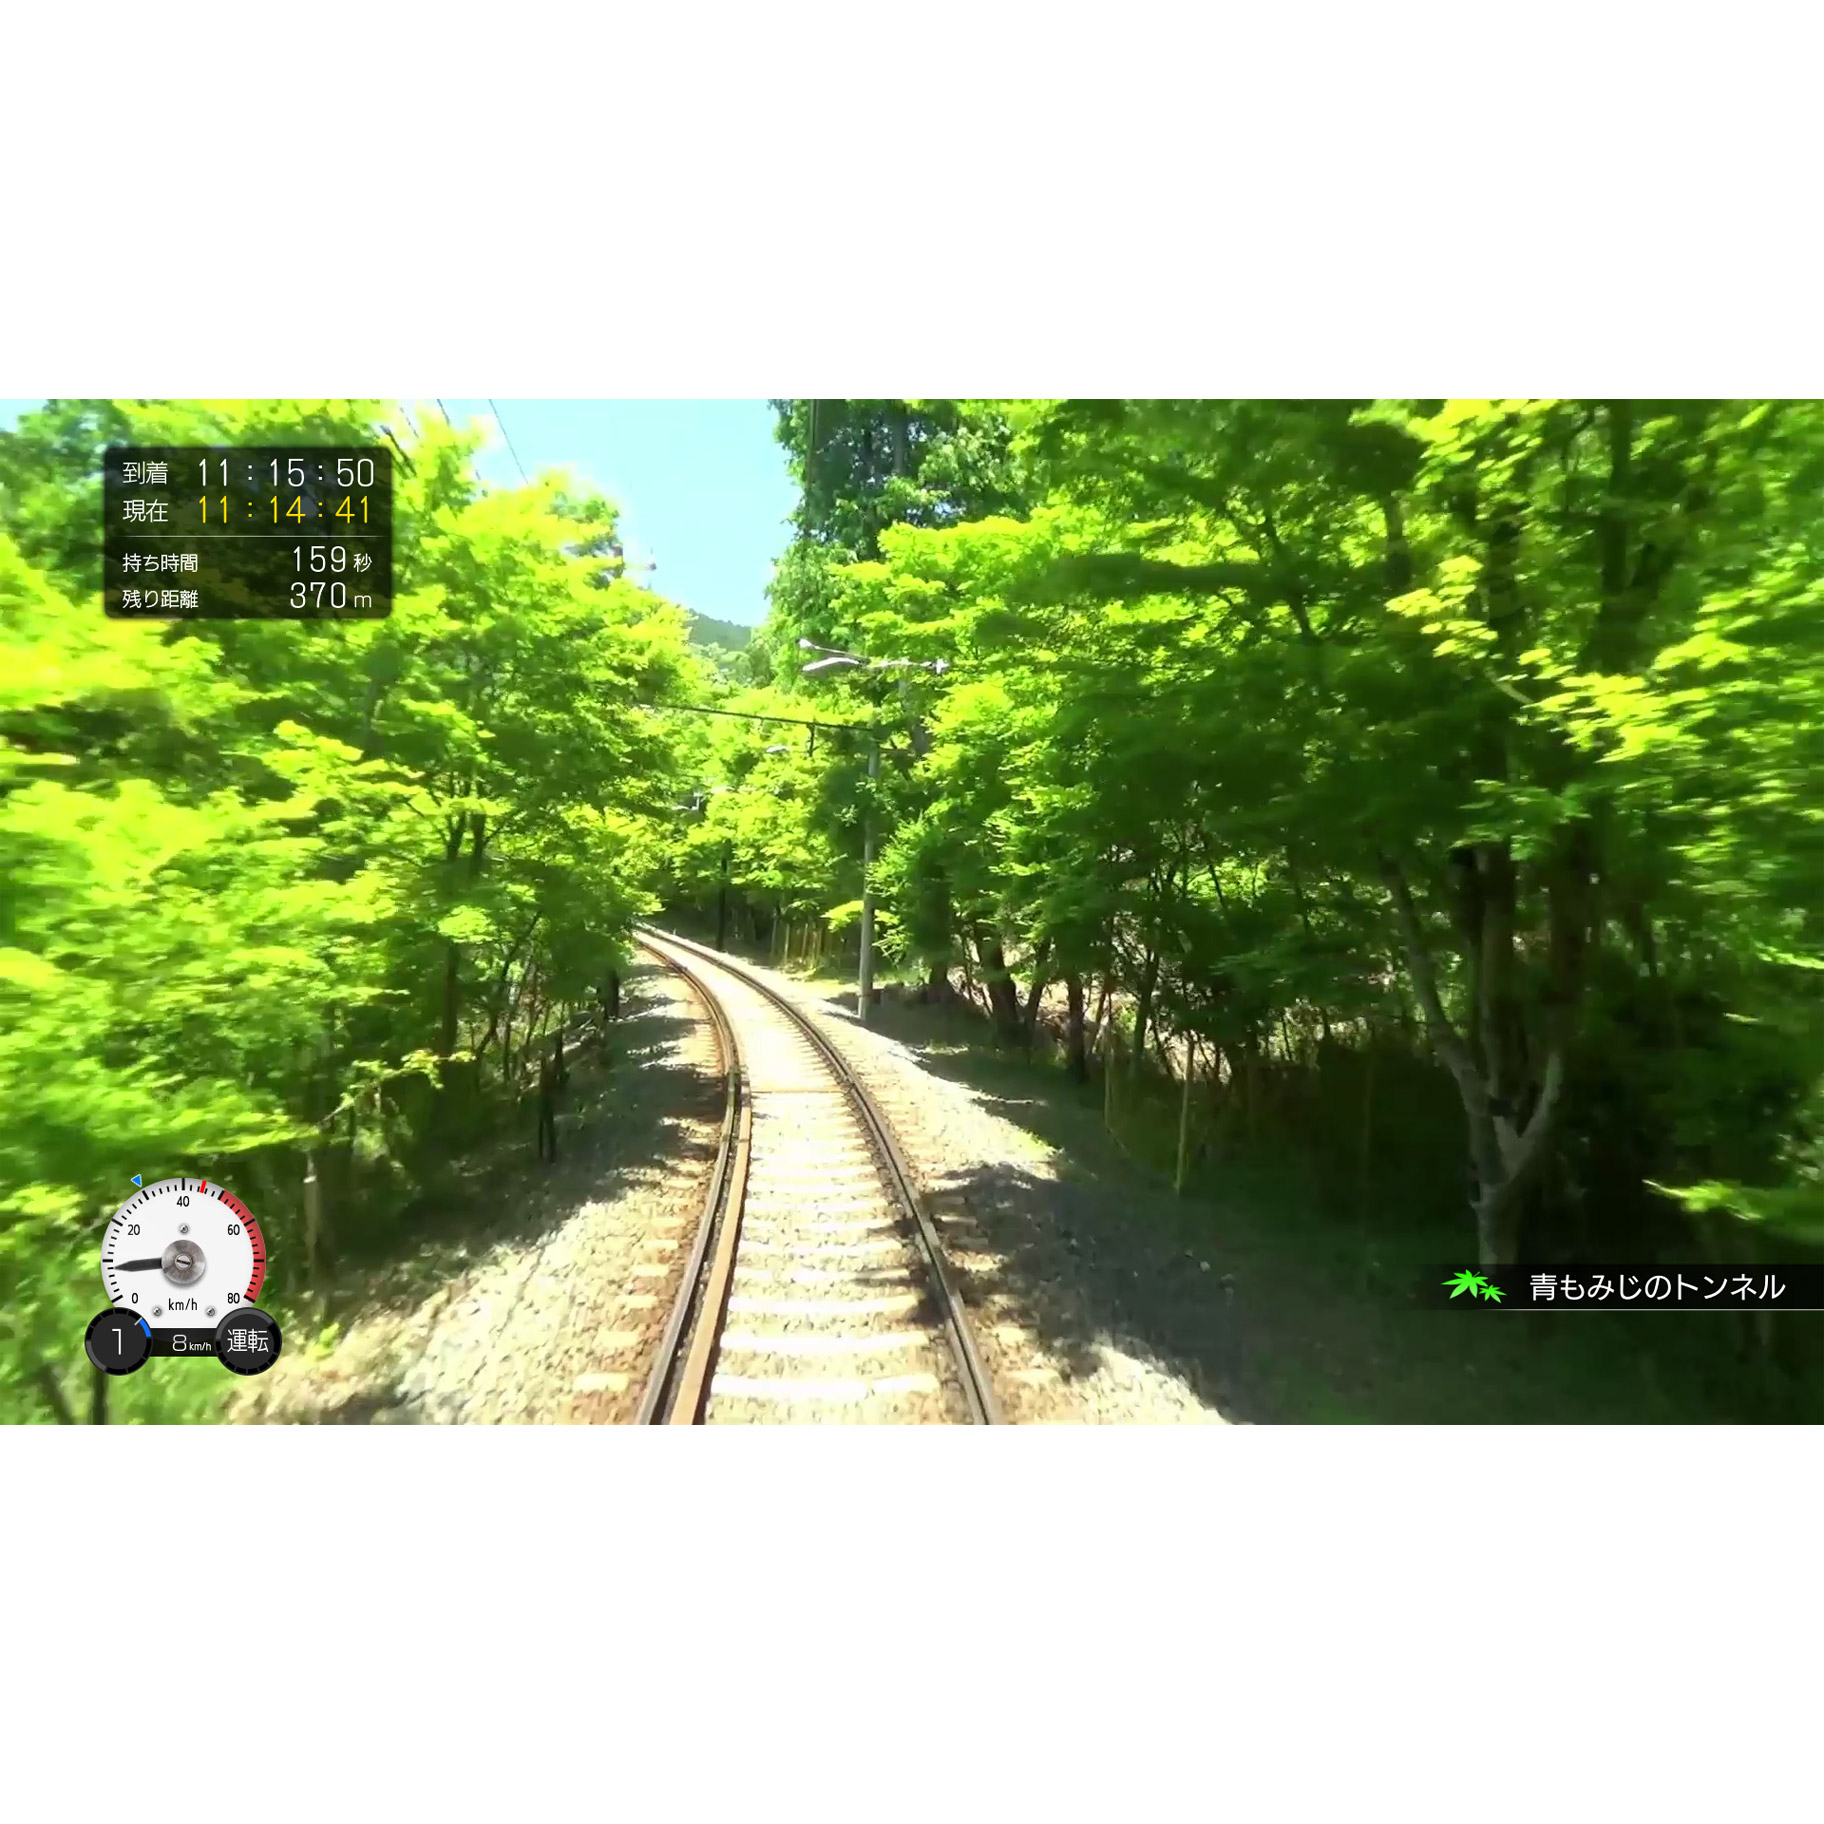 鉄道にっぽん！路線たび 叡山電車編 【PS4ゲームソフト】【sof001】_3